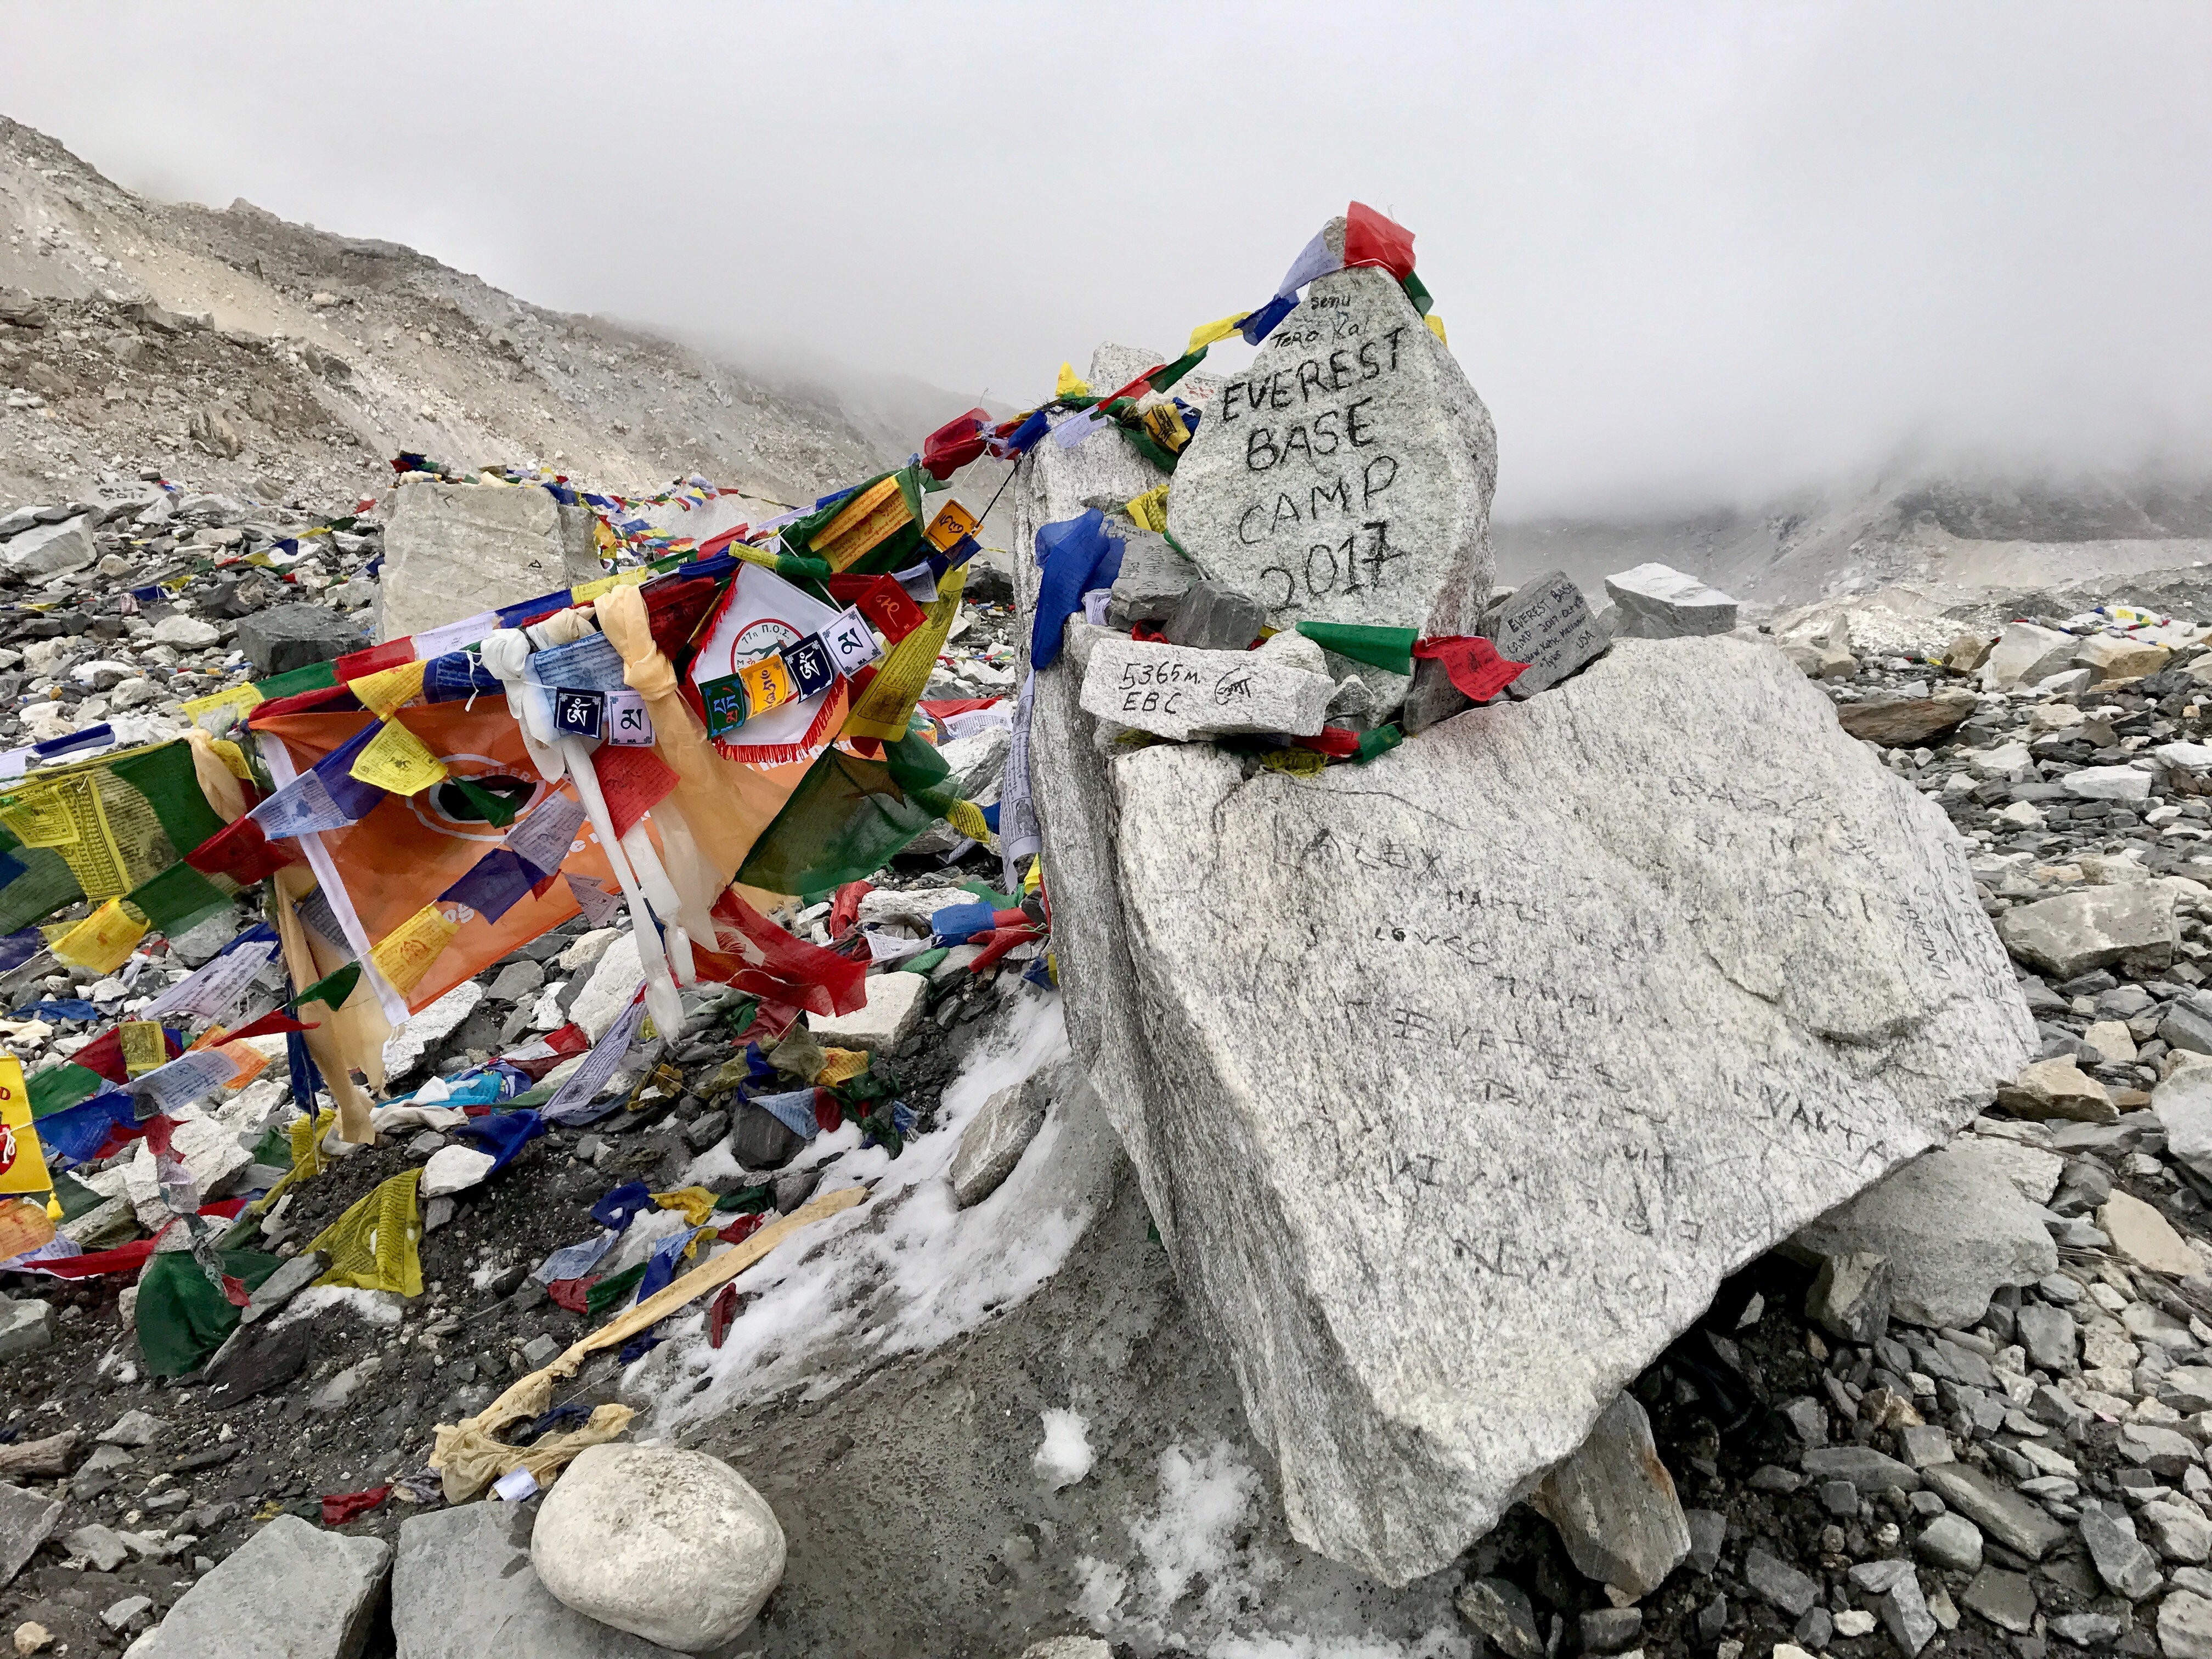 Basura en el campamento base del Everest. Foto: Mari Partyka/Unsplash